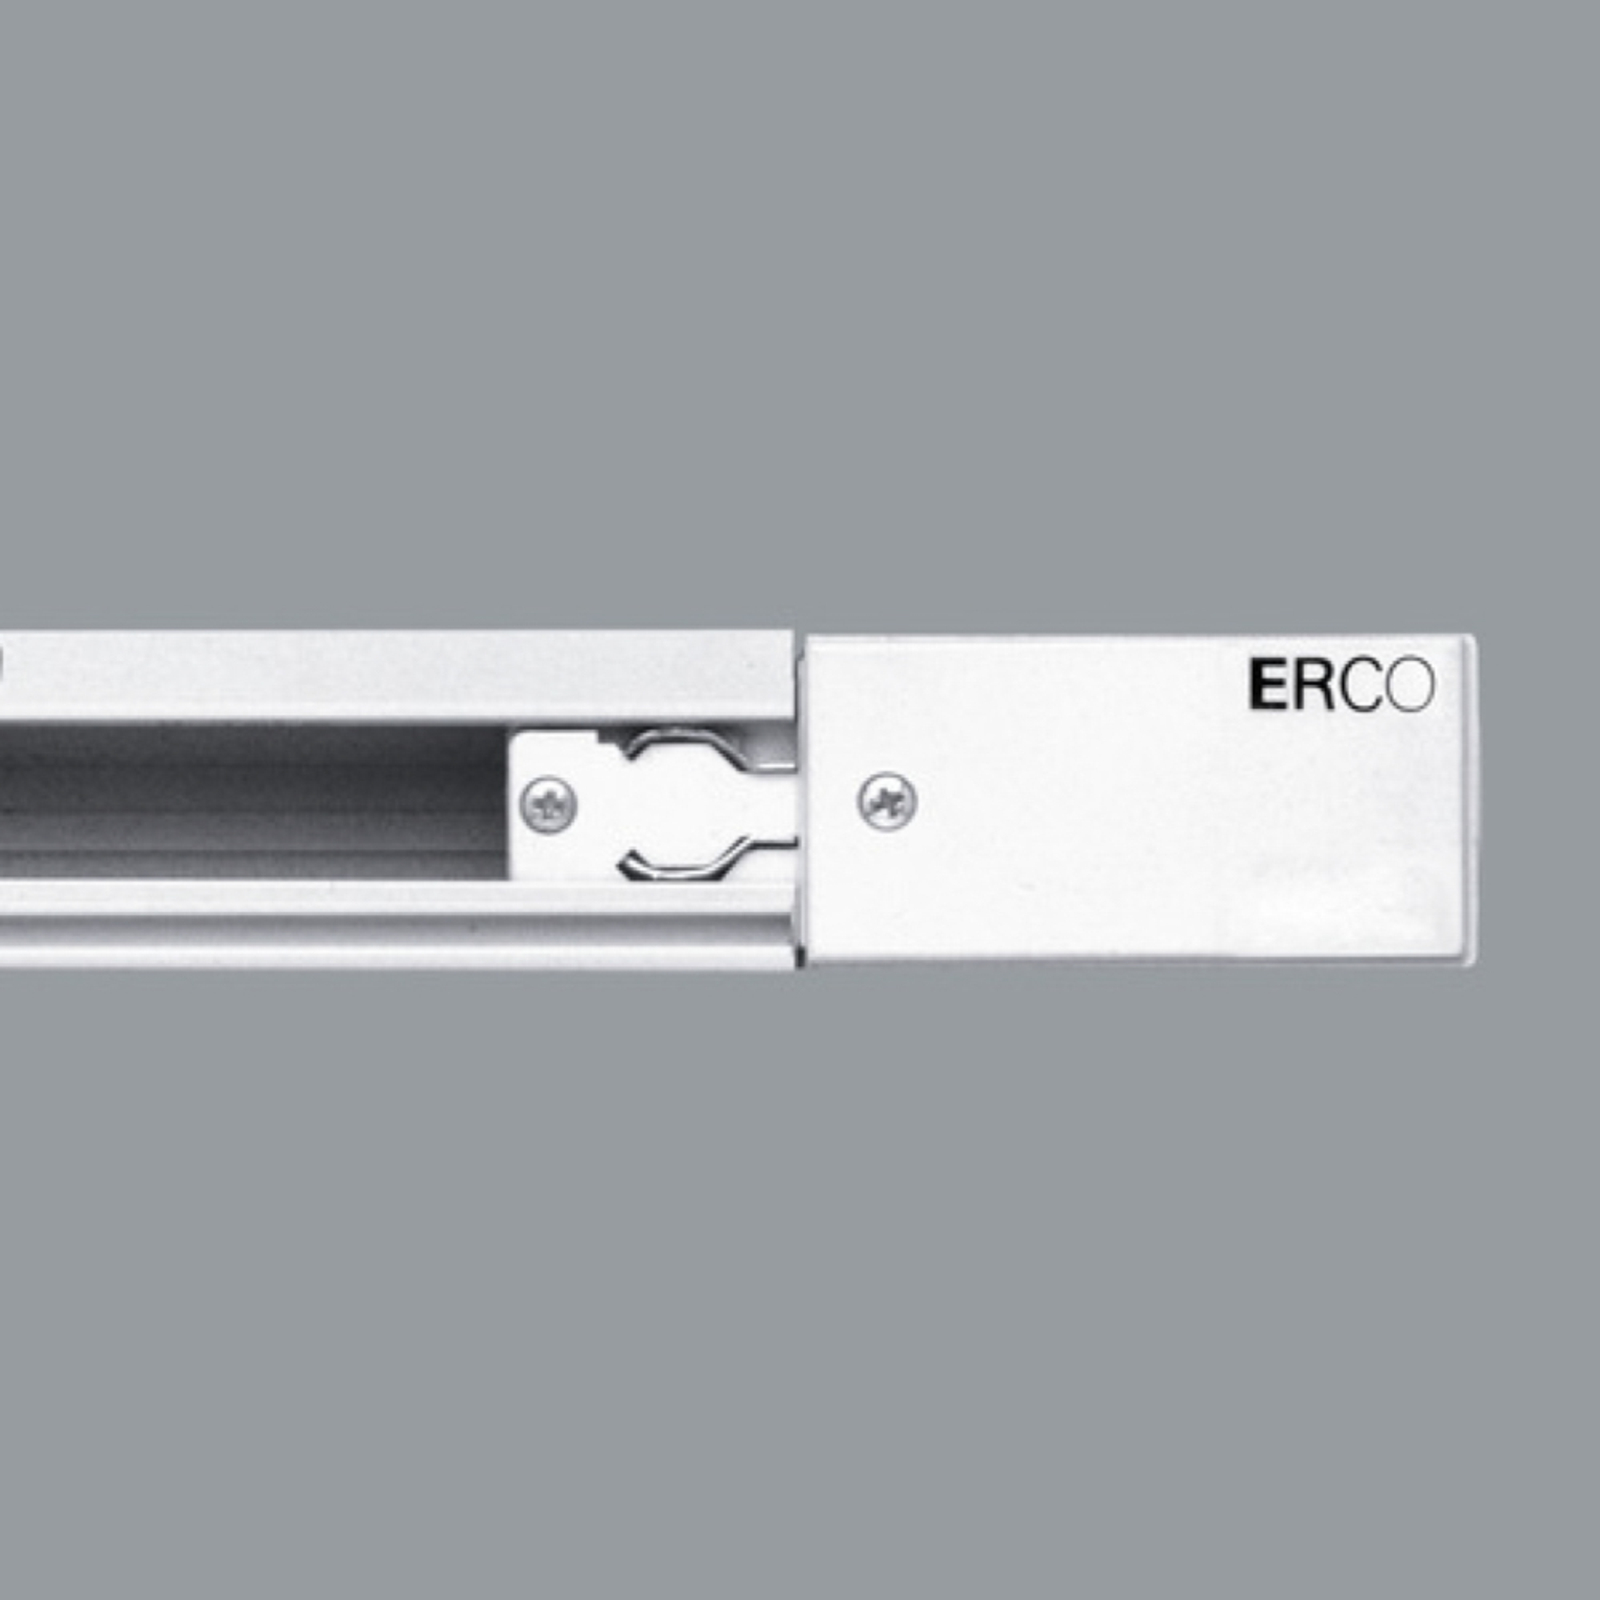 ERCO 3-Phasen-Einspeisung Schutzleiter links weiß